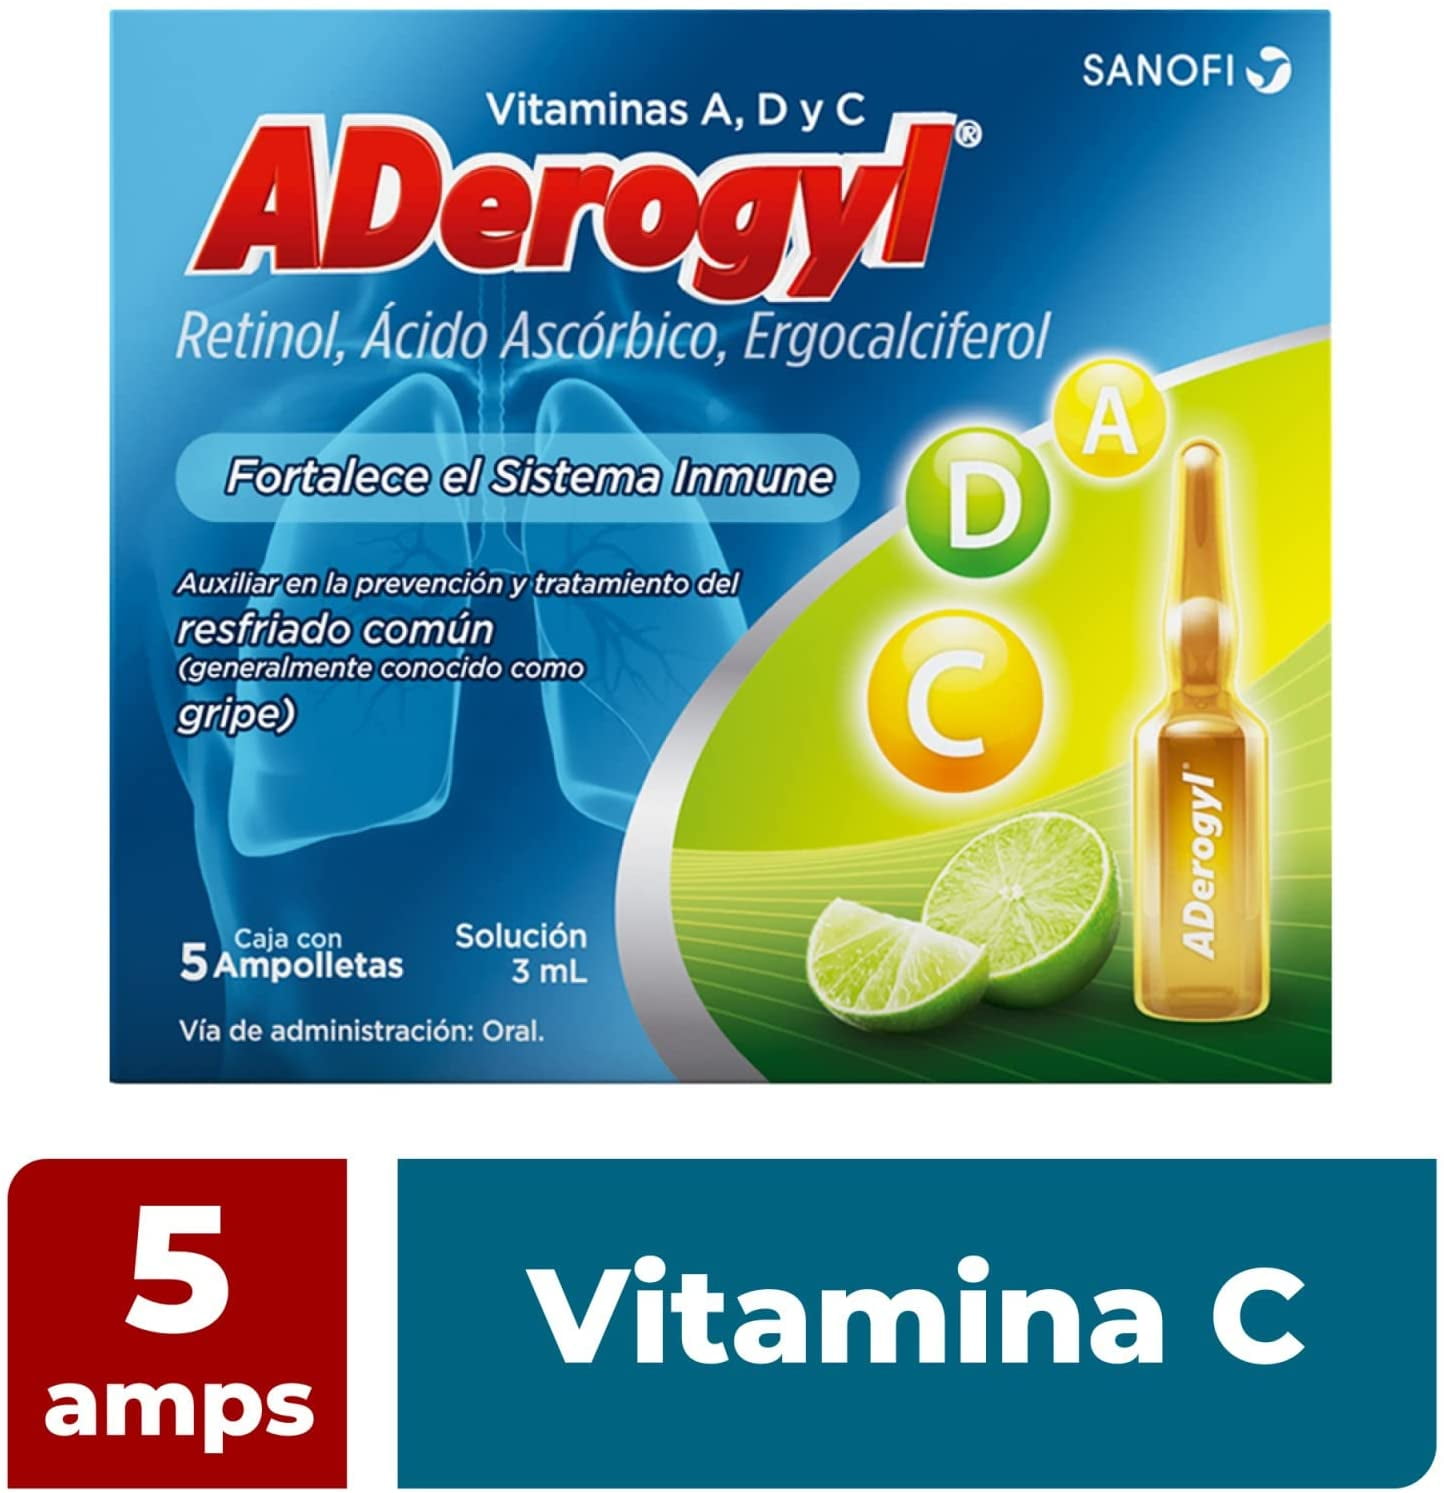 ADerogyl - Protégete del resfriado común tomando tu dosis diaria